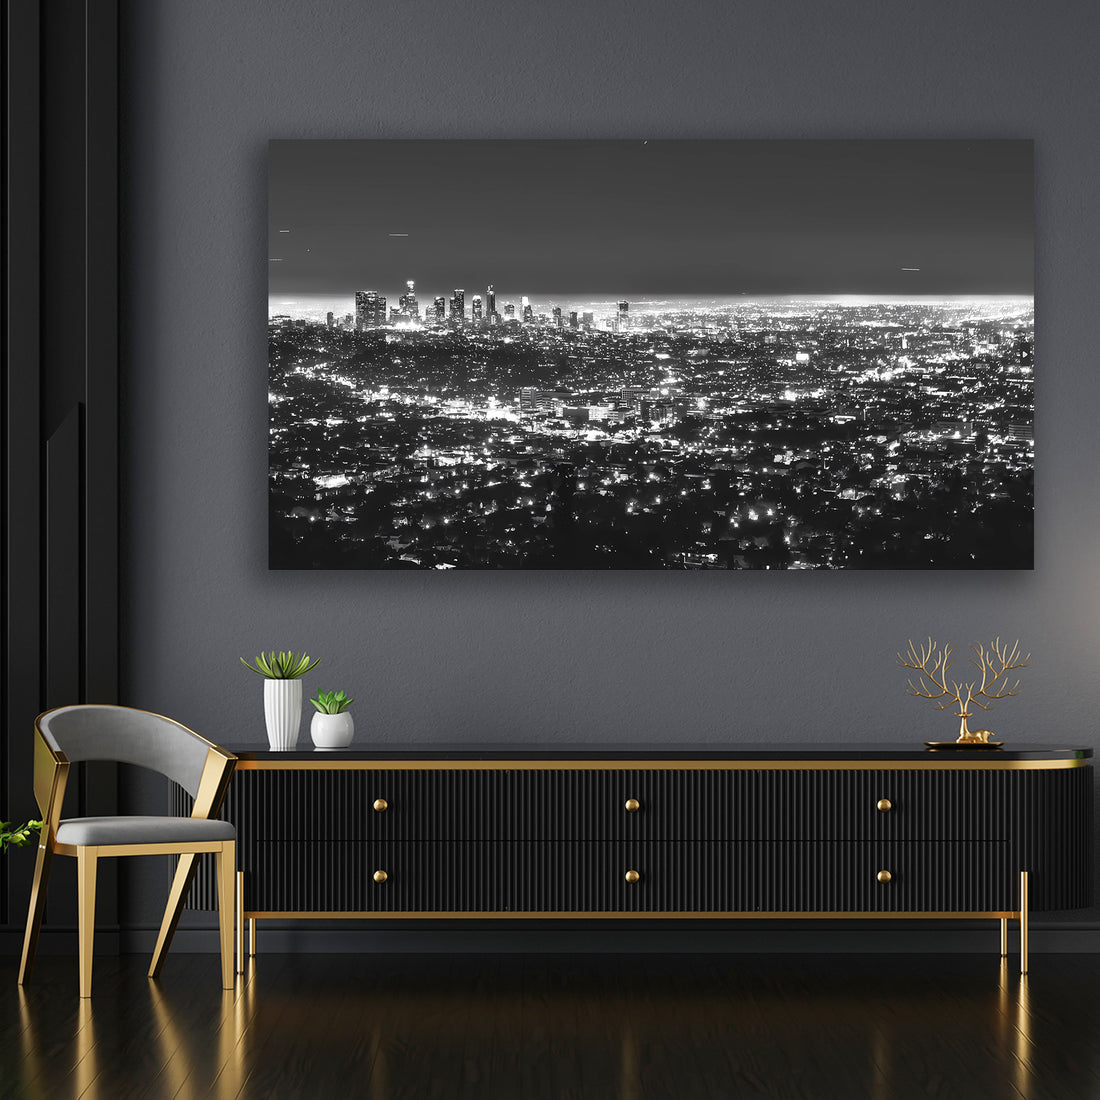 Wandbild Skyline, Los Angeles USA, schwarz weiß